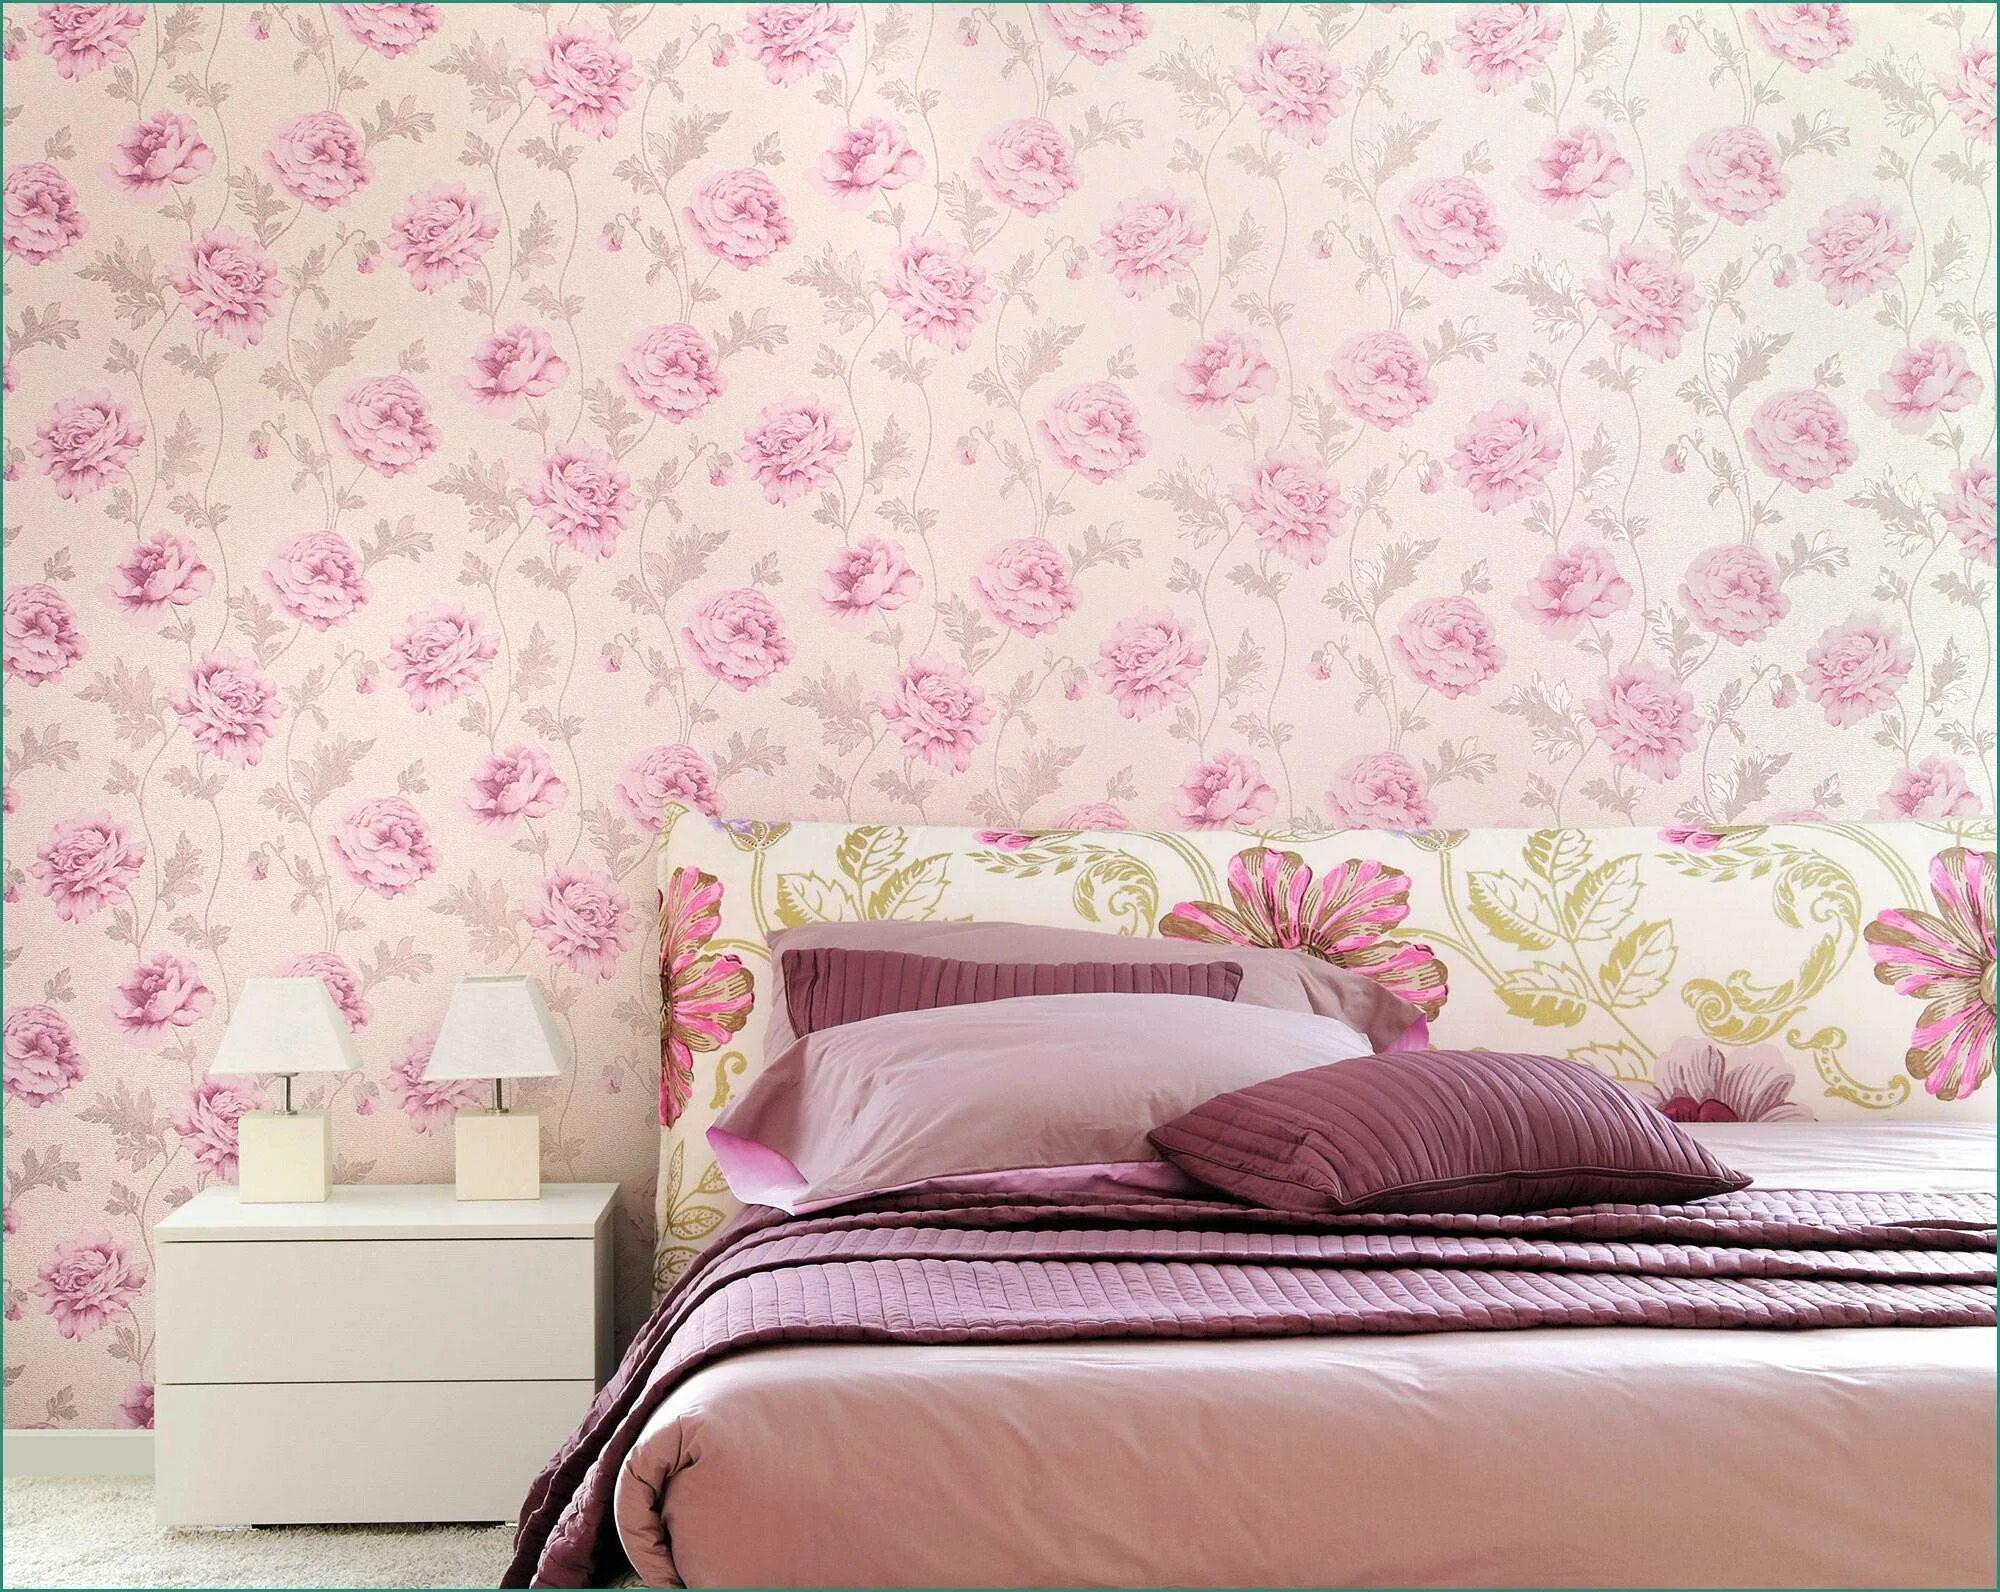 Обои на стены купить в интернете. Обои в цветочек для спальни. Обои для спальни комбинированные. Виниловые обои для спальни. Обои для спальни в розовых тонах.